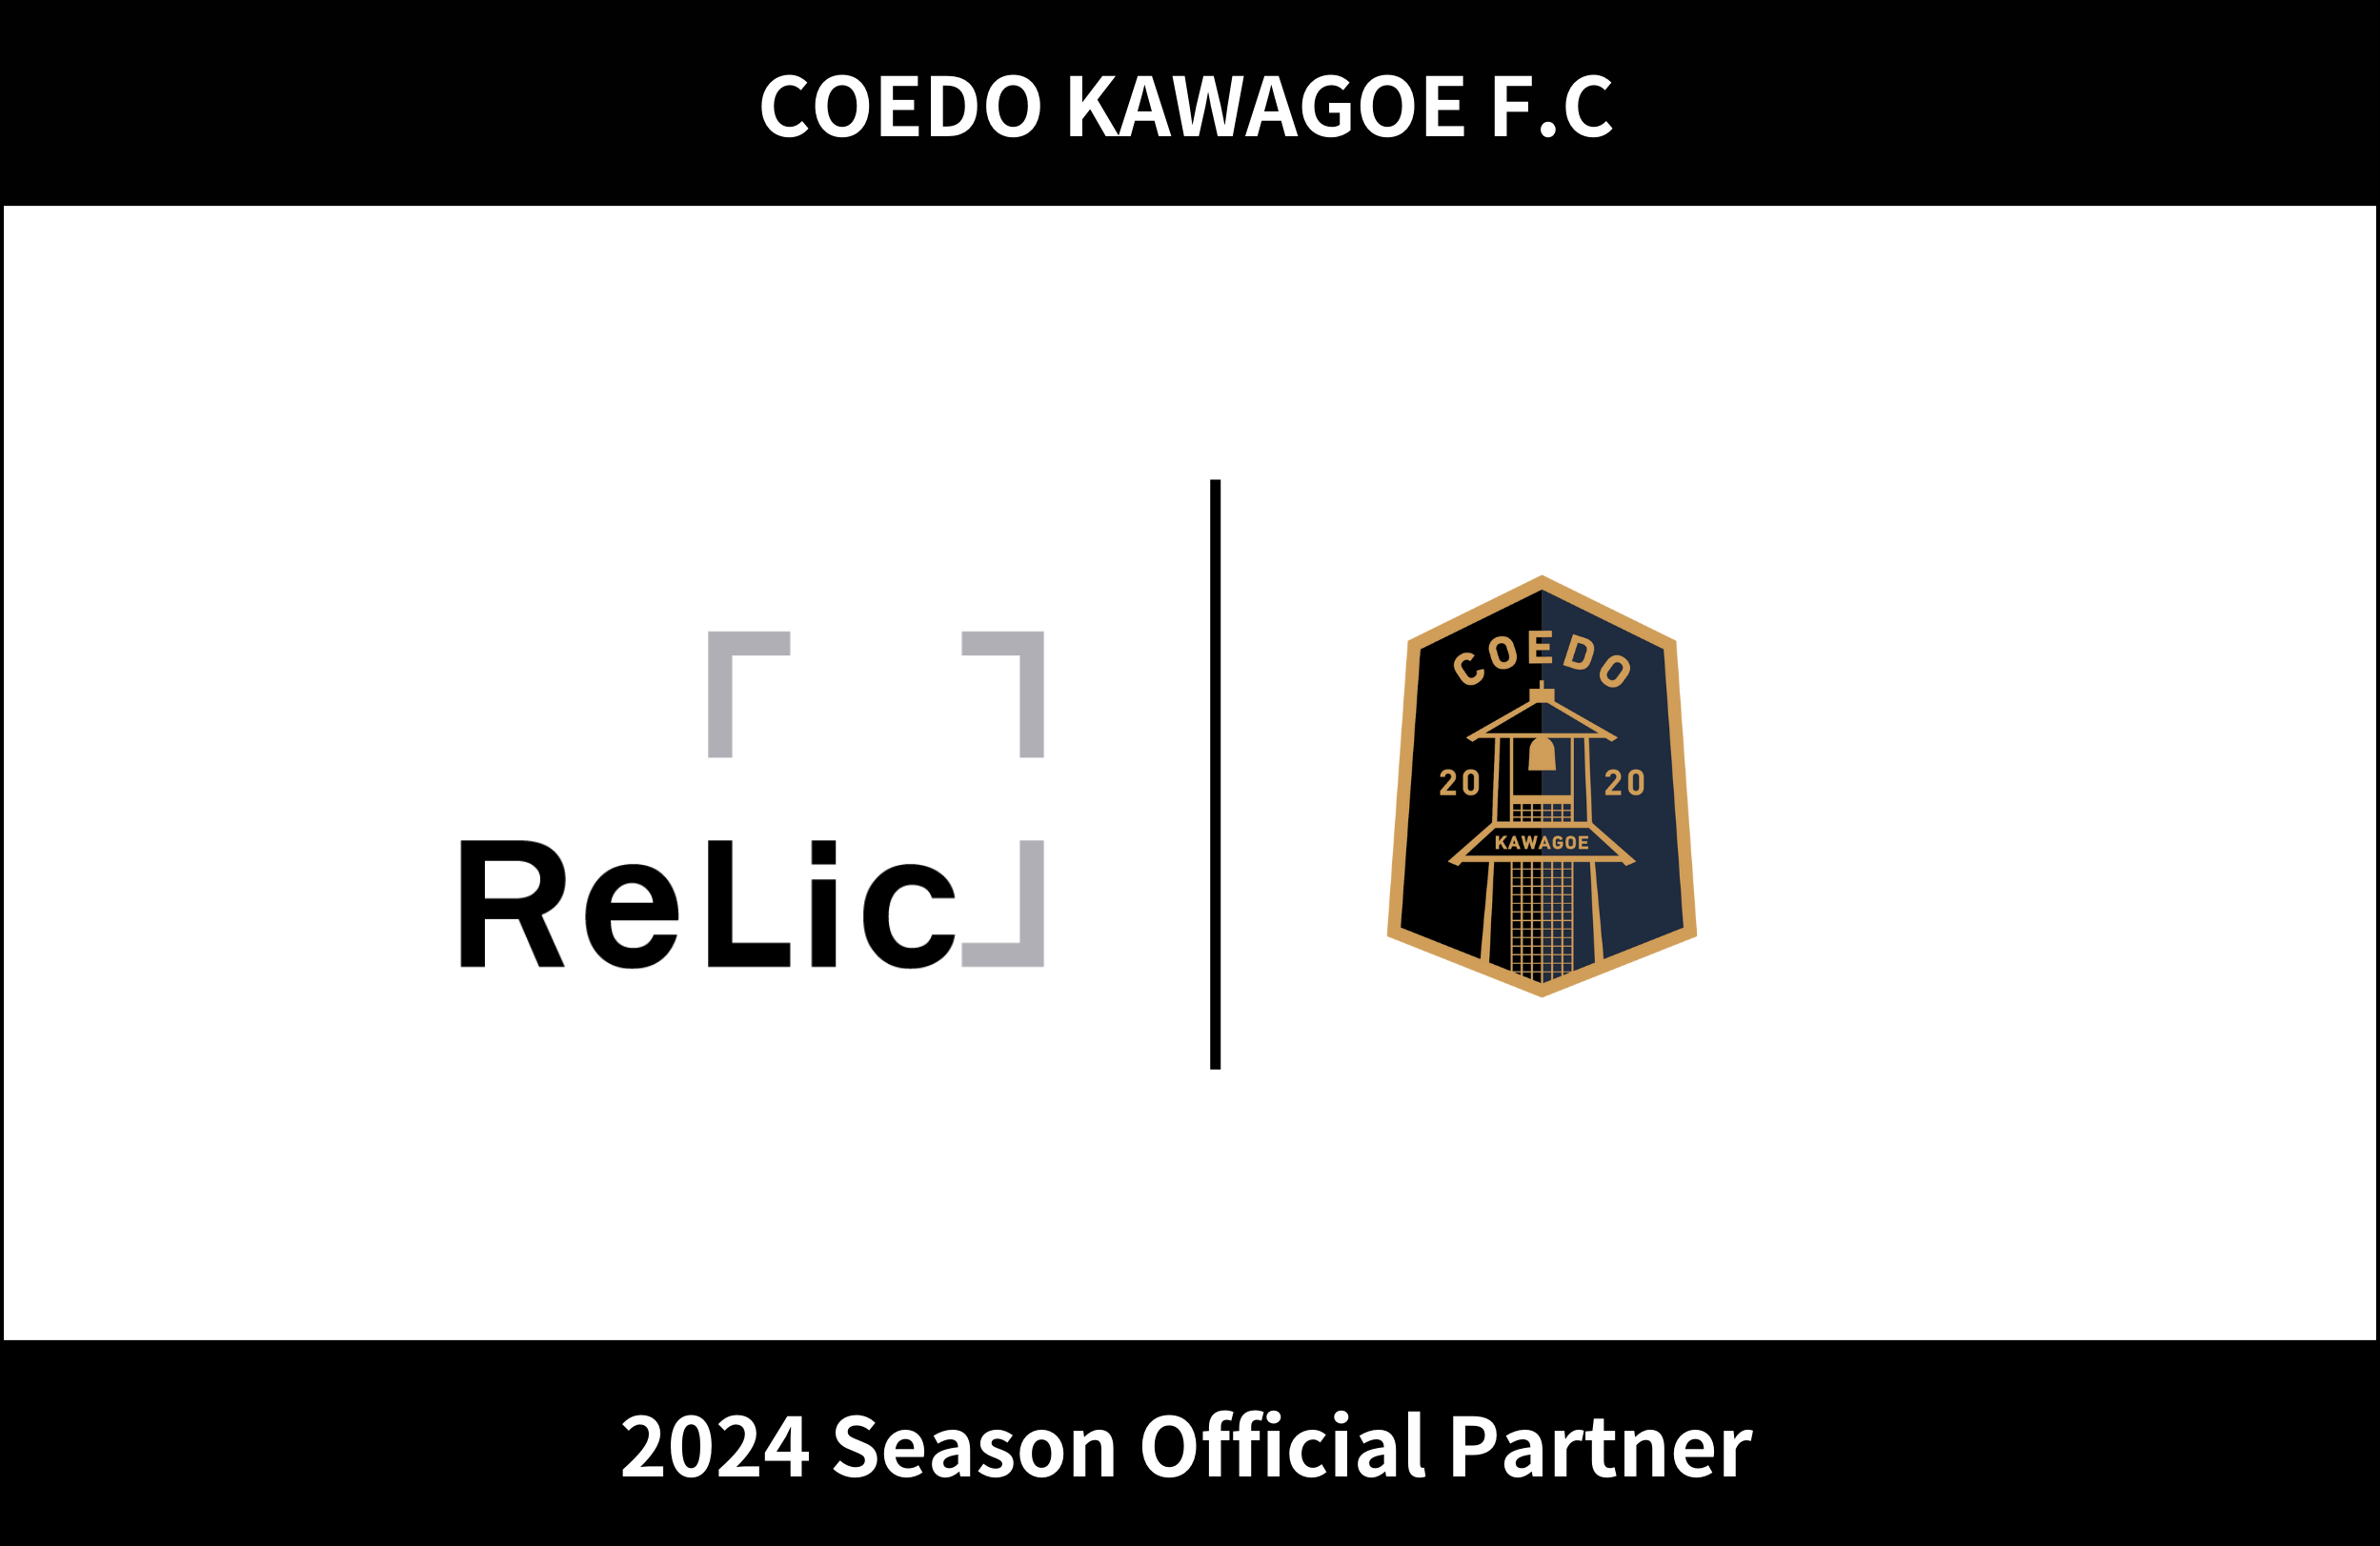 埼玉県川越市からJリーグを目指す「COEDO KAWAGOE F.C」、事業共創カンパニーの株式会社Relicと2024シーズンのオフィシャルパートナー契約を更新